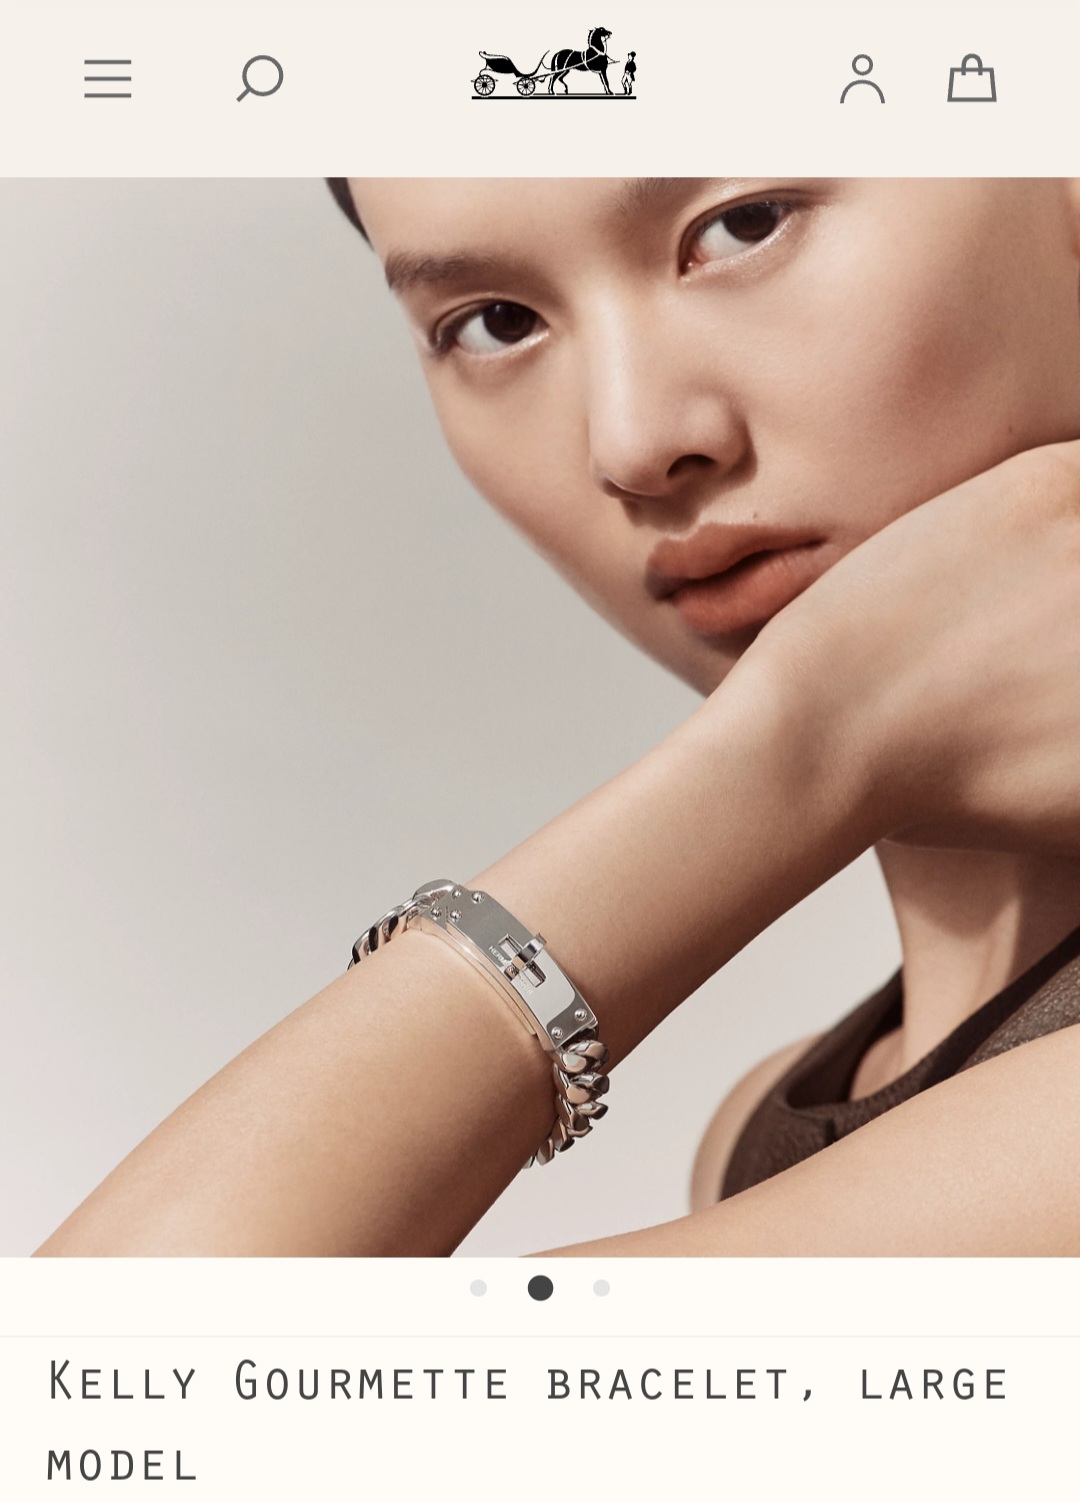 Hermes Kelly Gourmette bracelet, large model